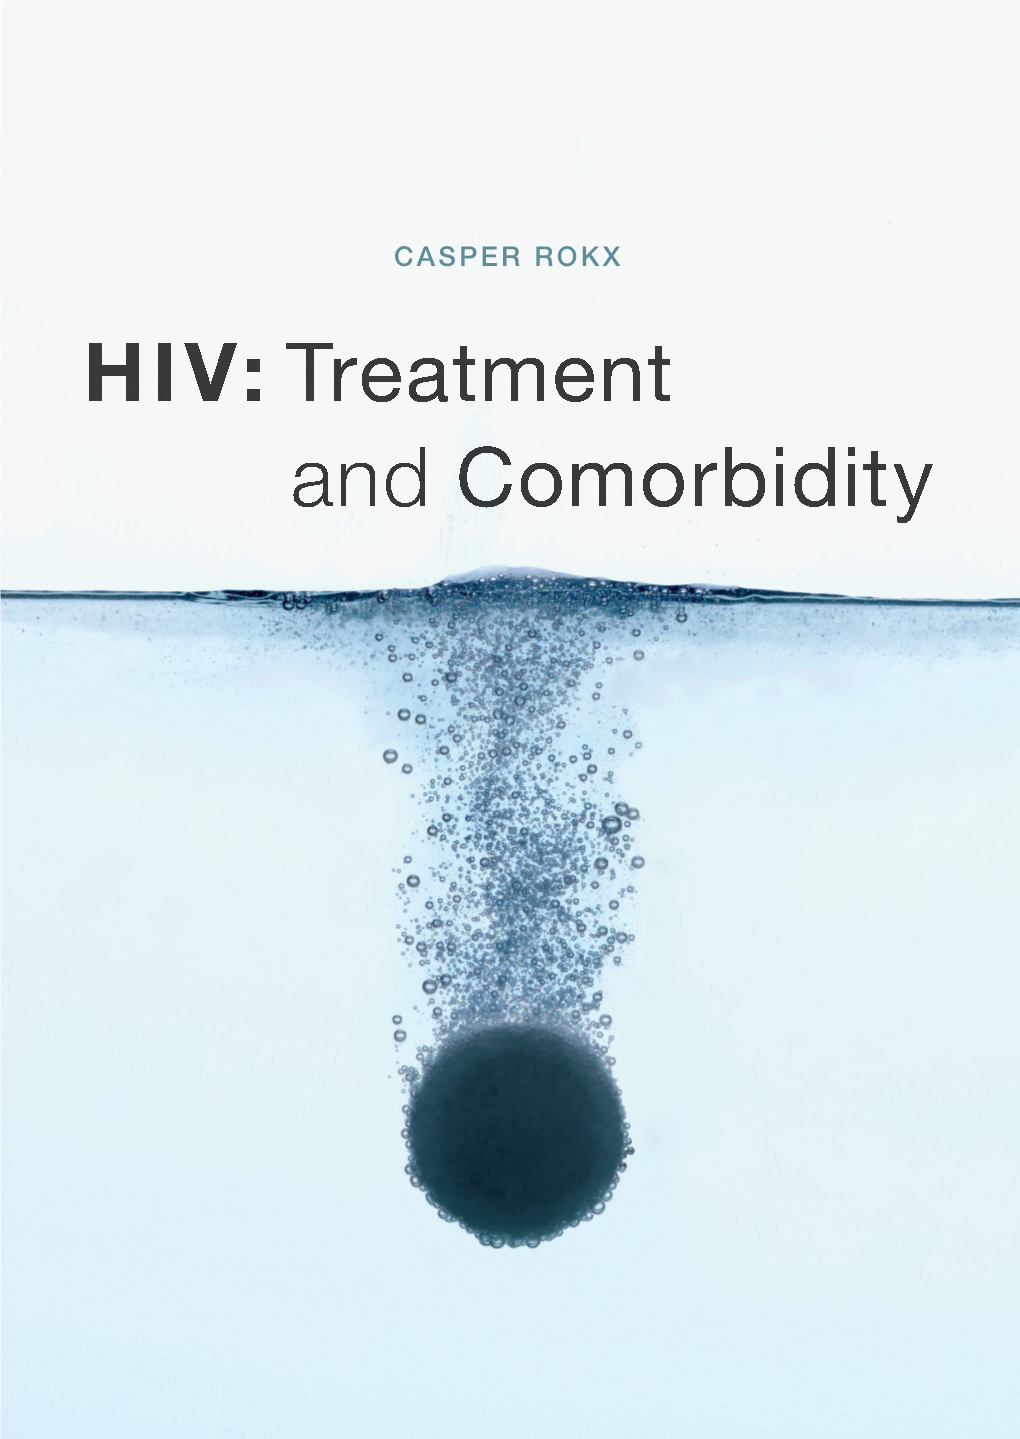 CASPER ROKX HIV: Treatment and Comorbidity